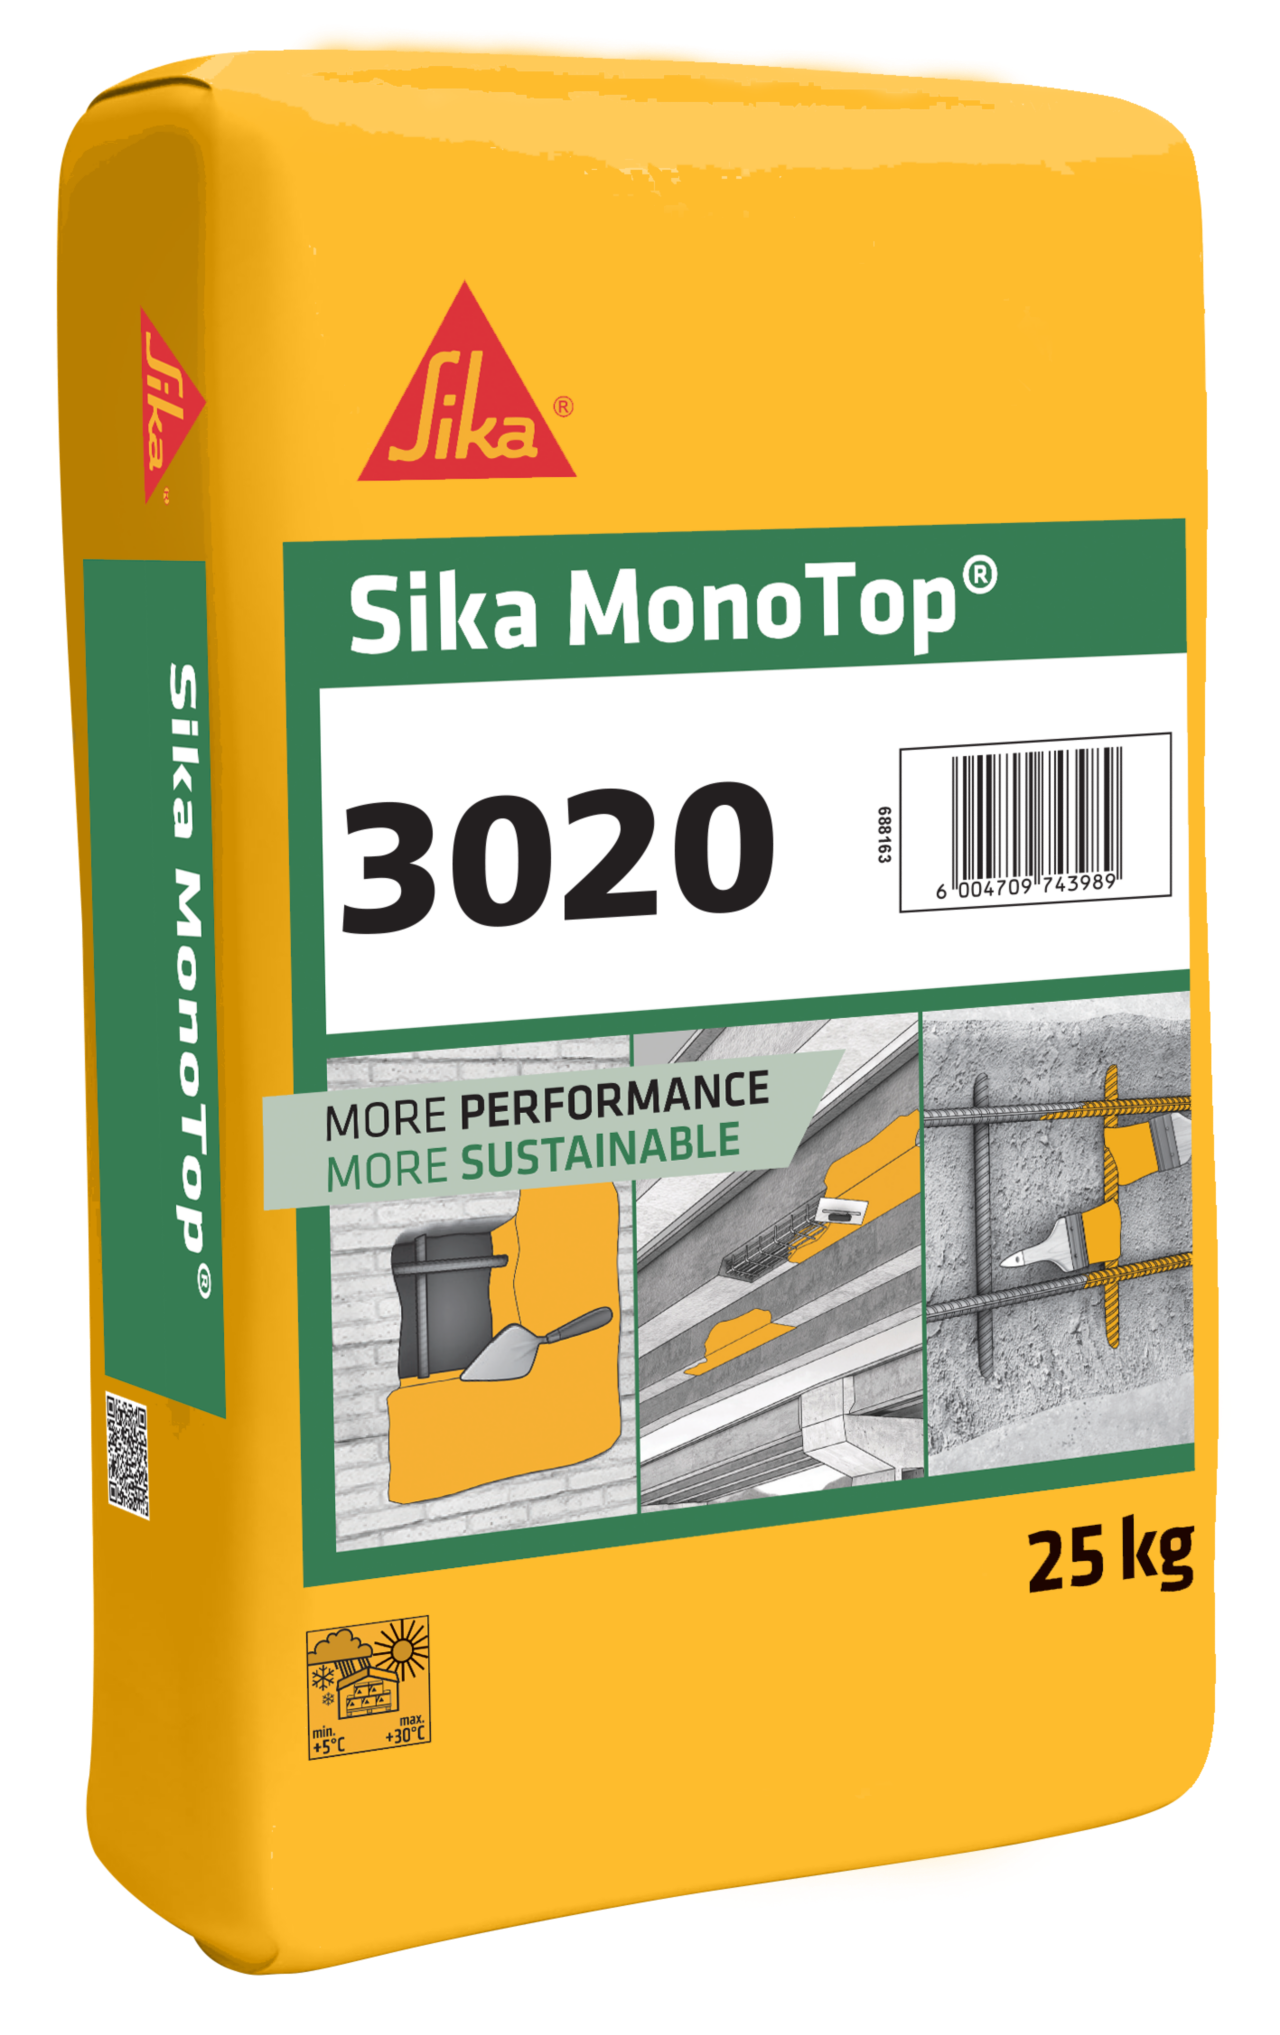 Sika MonoTop® -3020 Concrete Repair Mortar